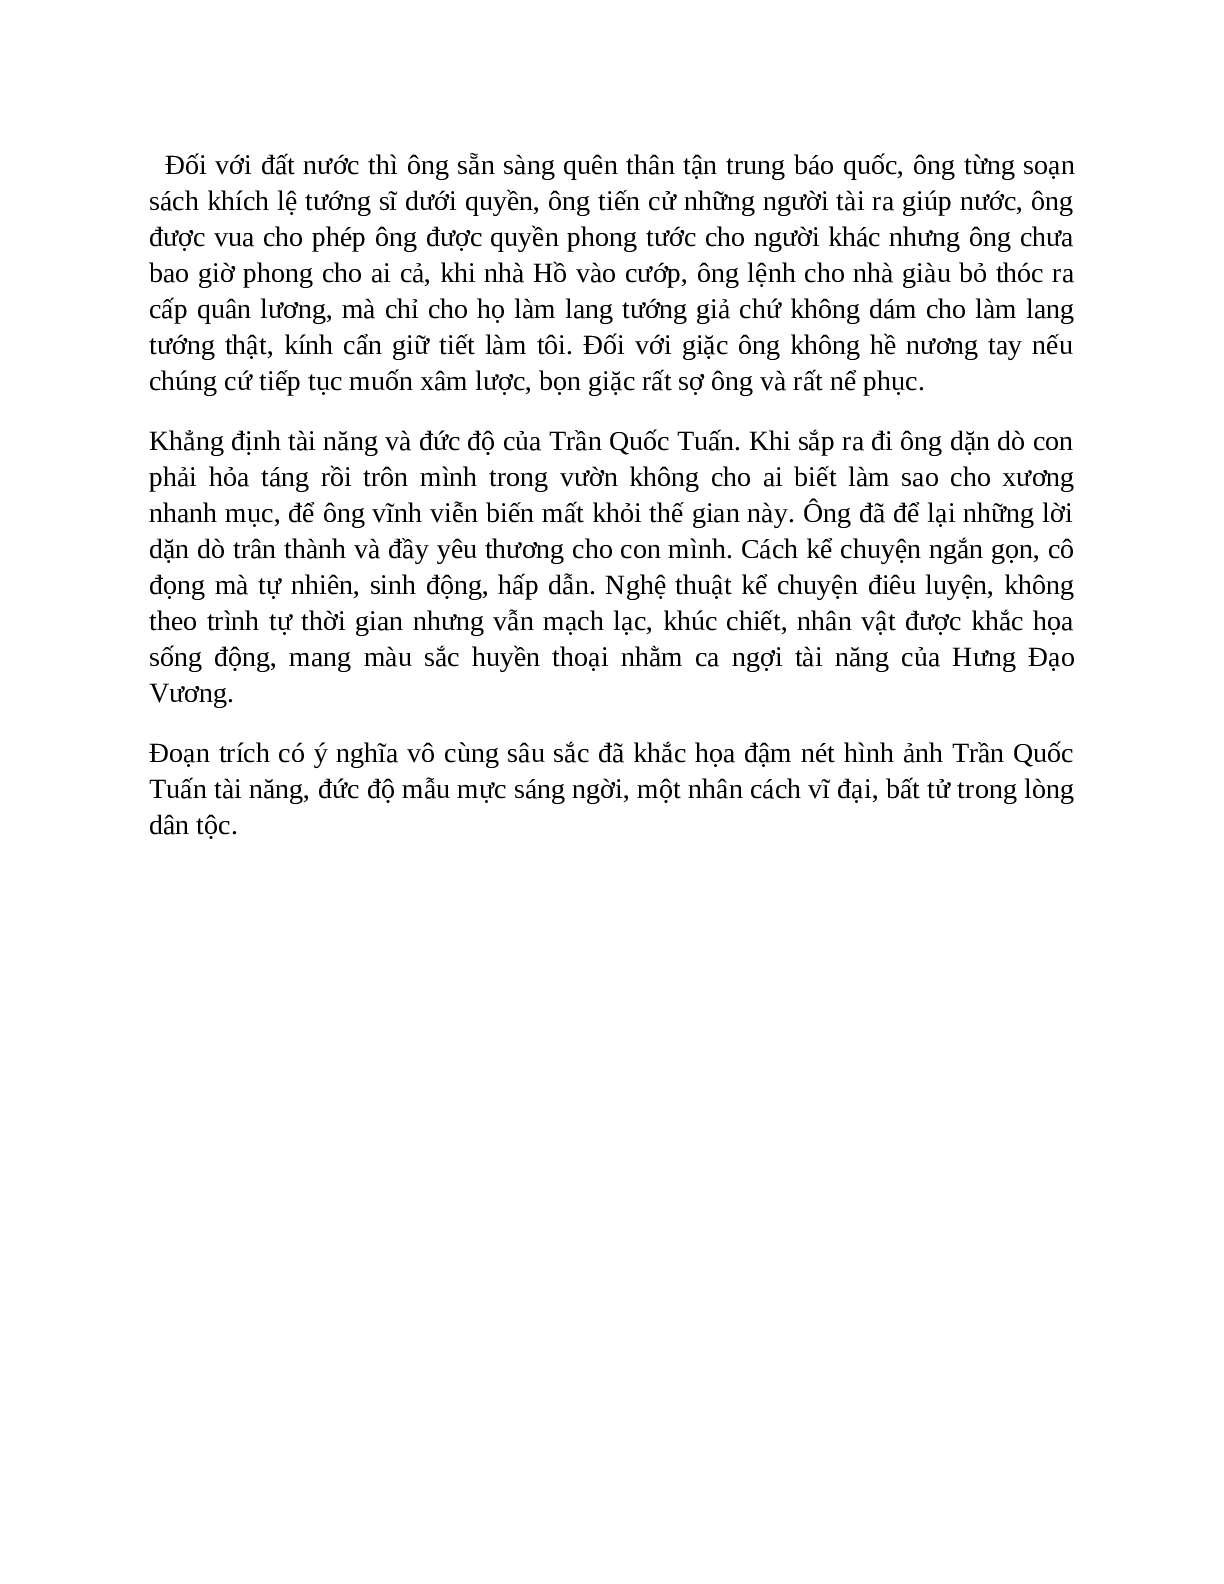 Sơ đồ tư duy bài Hưng Đạo đại vương Trần Quốc Tuấn dễ nhớ, ngắn nhất - Ngữ văn lớp 10 (trang 10)